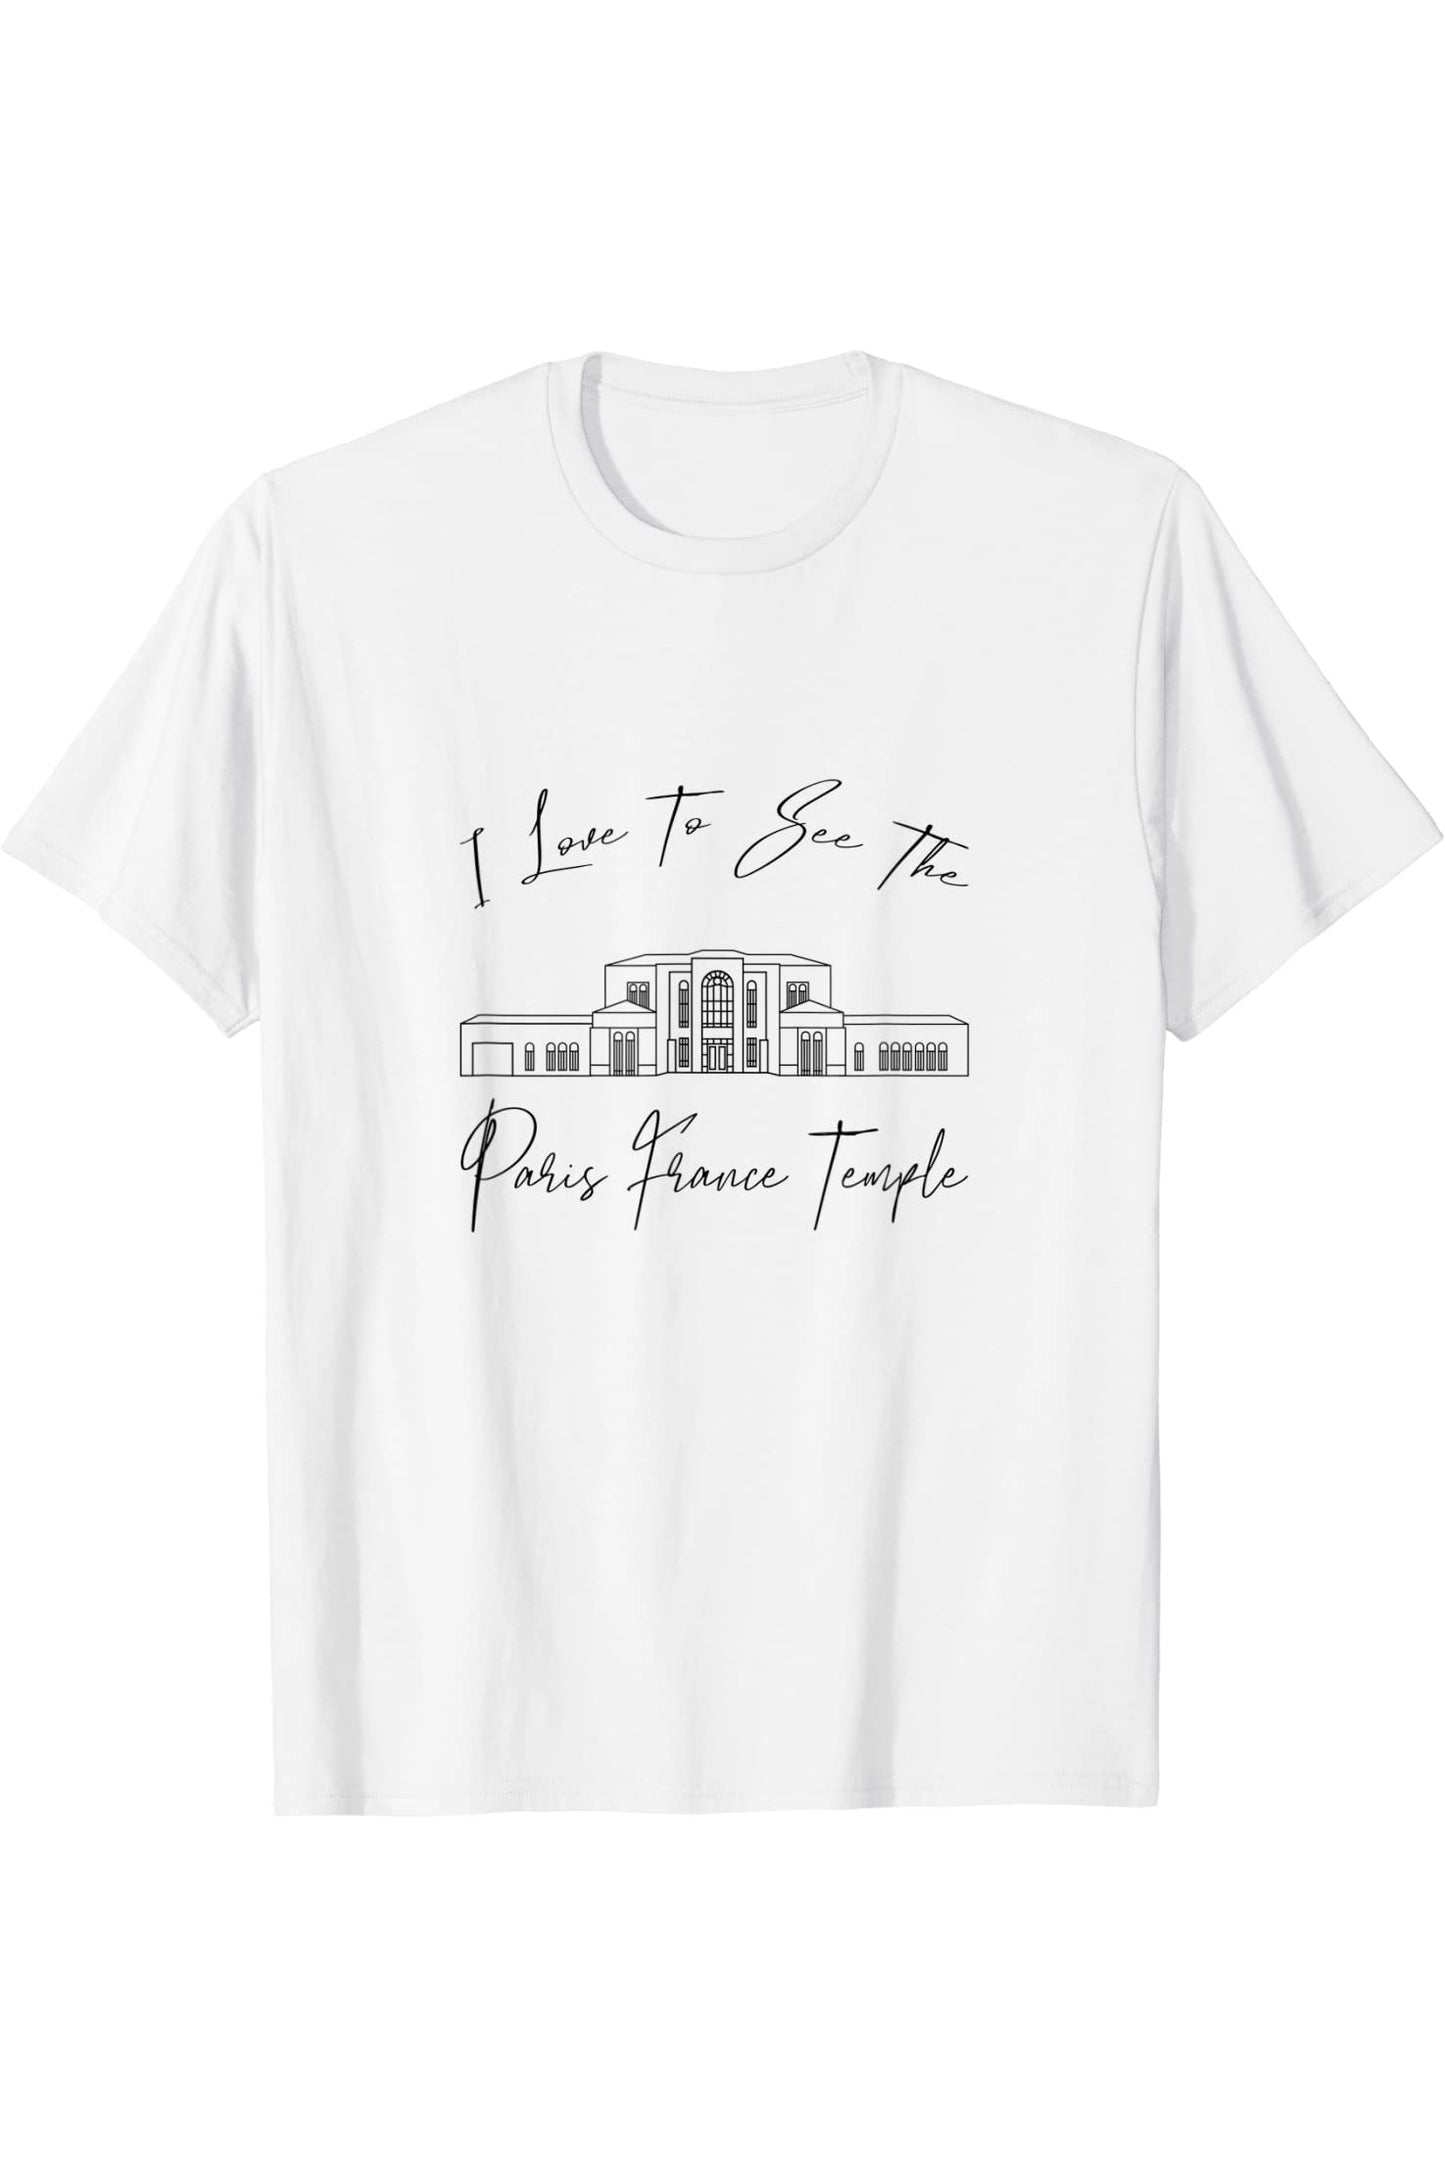 Parigi Francia Tempio, mi piace vedere il mio tempio, calligrafia T-Shirt